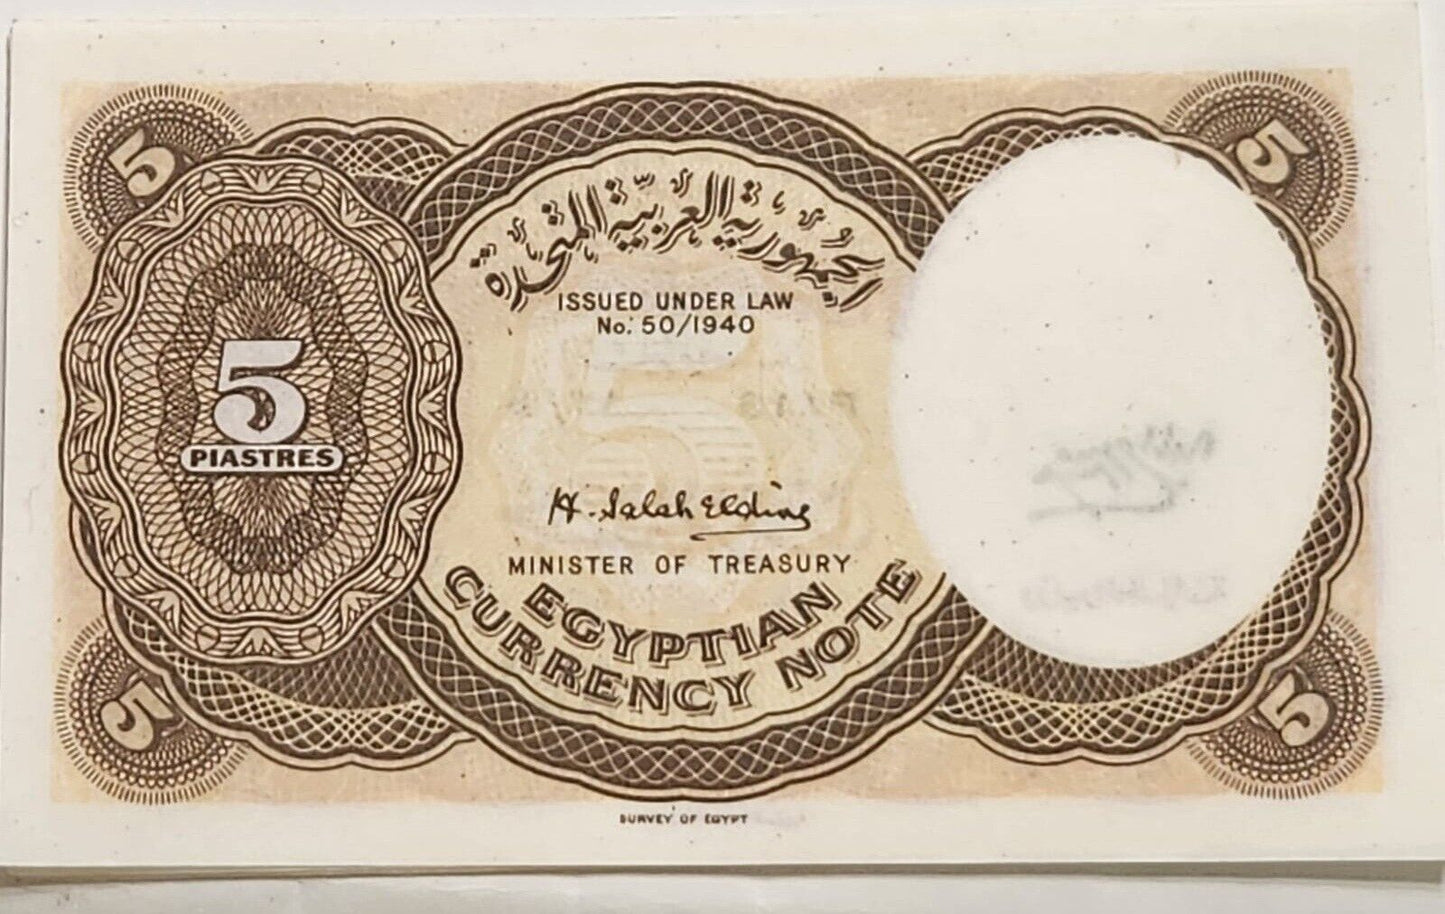 Egypt 5 Piastres L1940 (1958)  Signed Hassan Salah Eldin P176 CU est $50 .Eg4